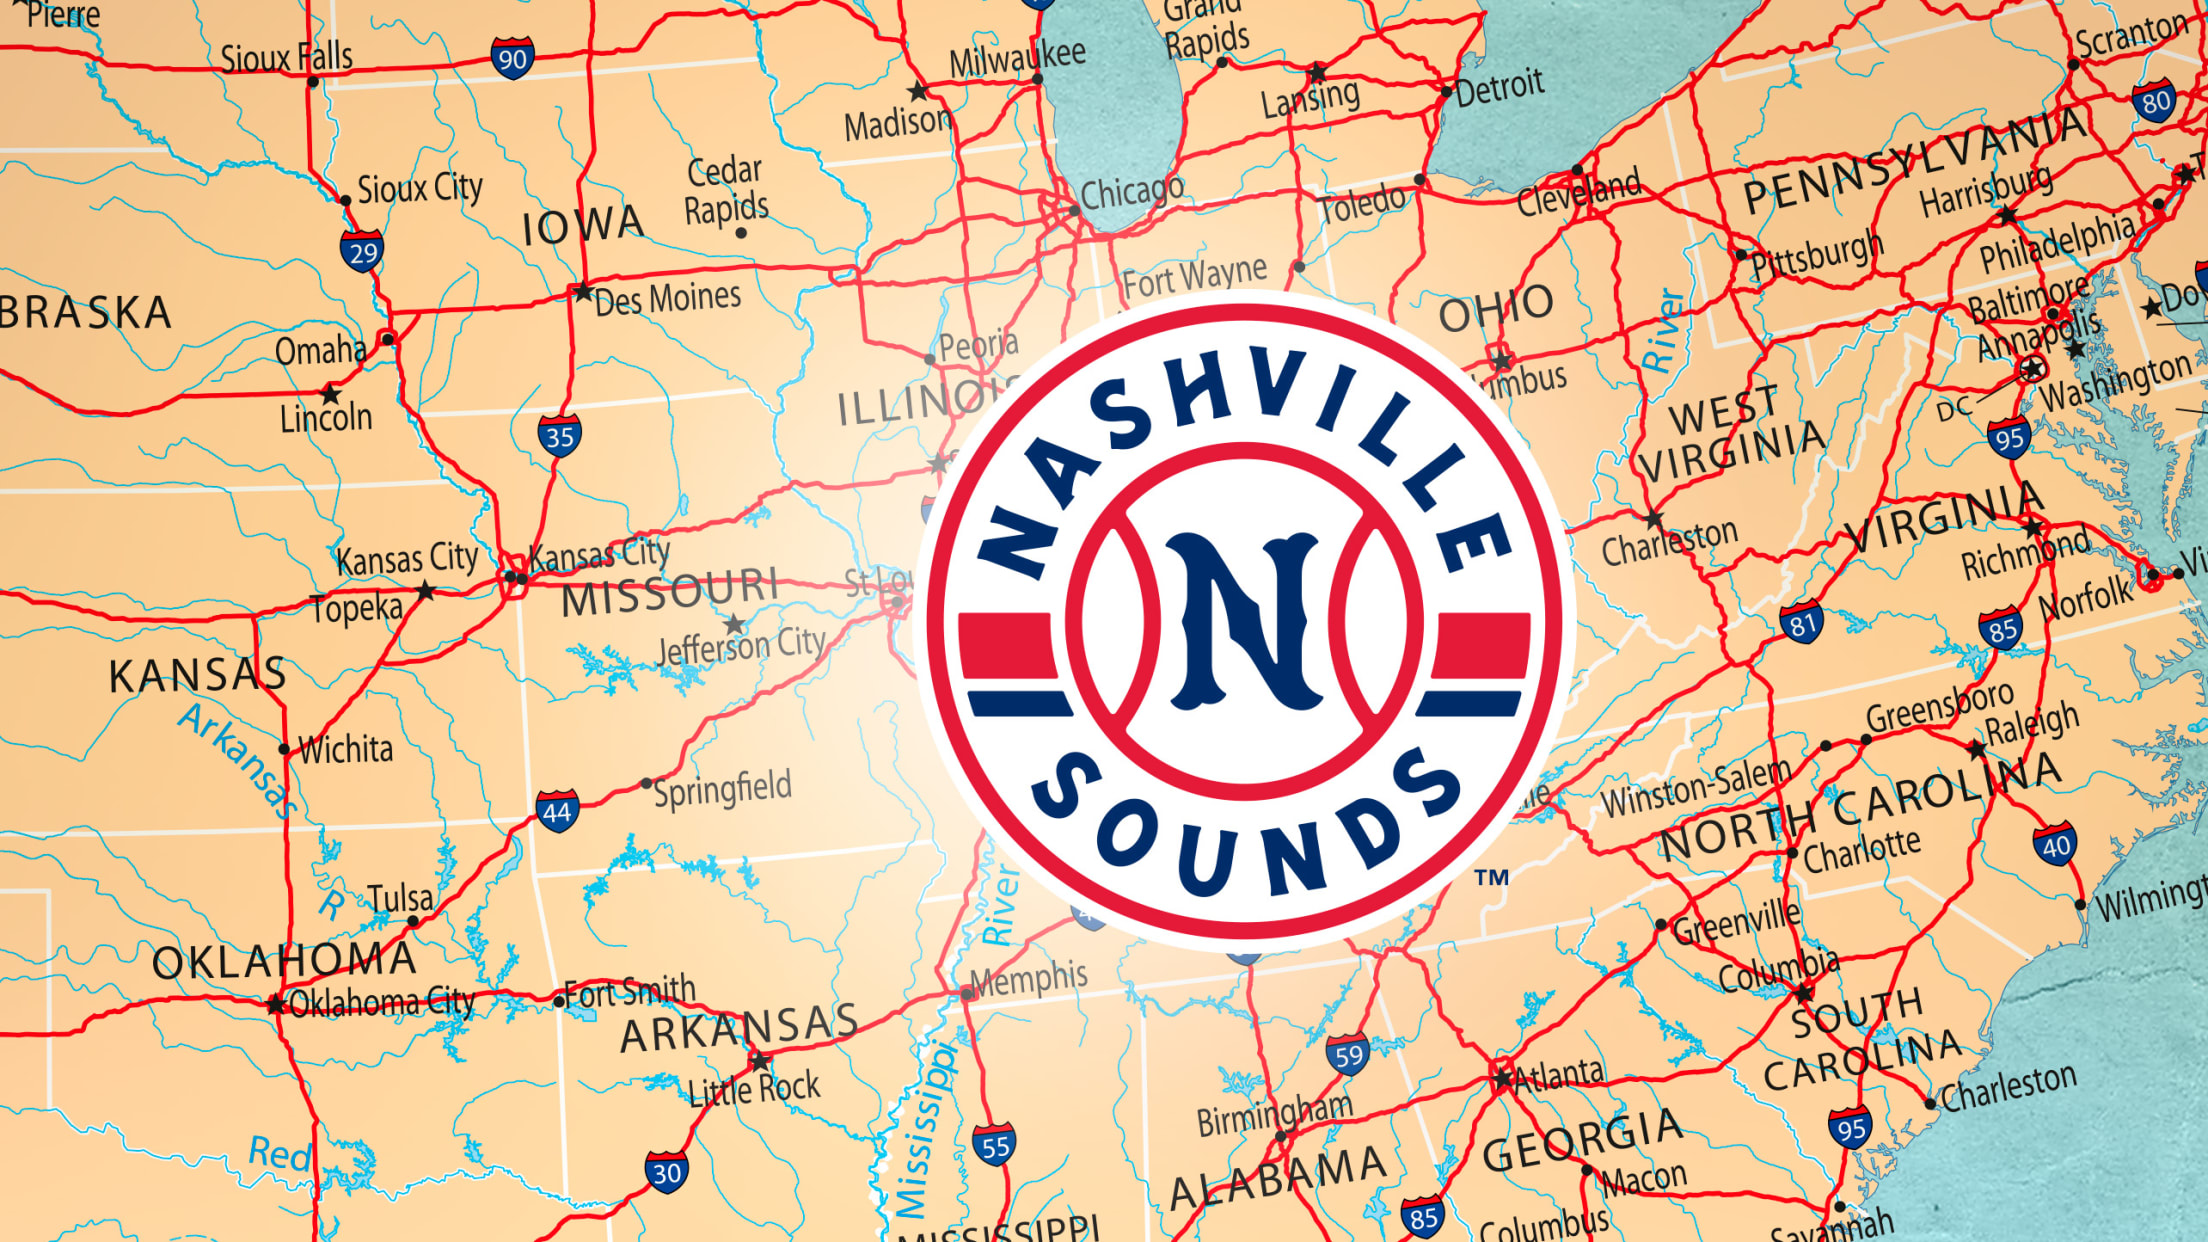 Nashville Sounds Official Store